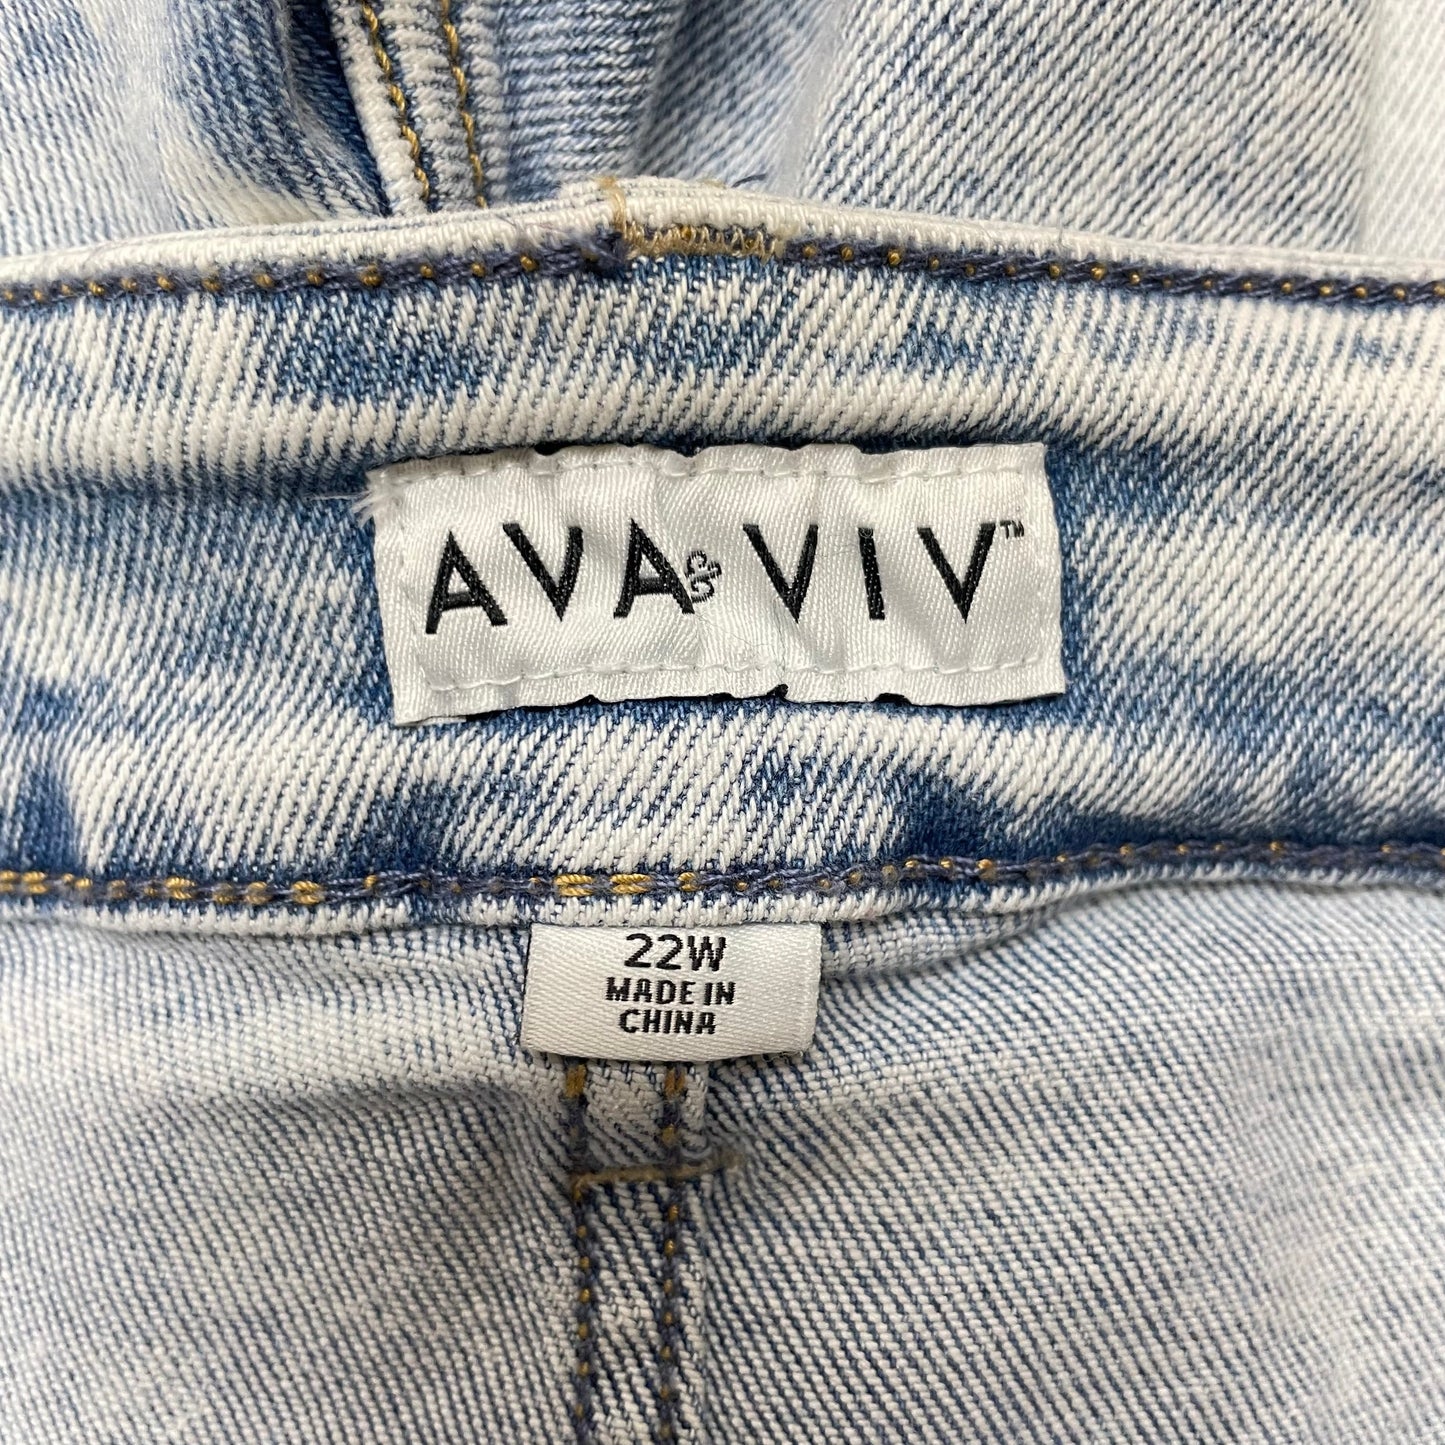 Denim Shorts By Ava & Viv, Size: 22w